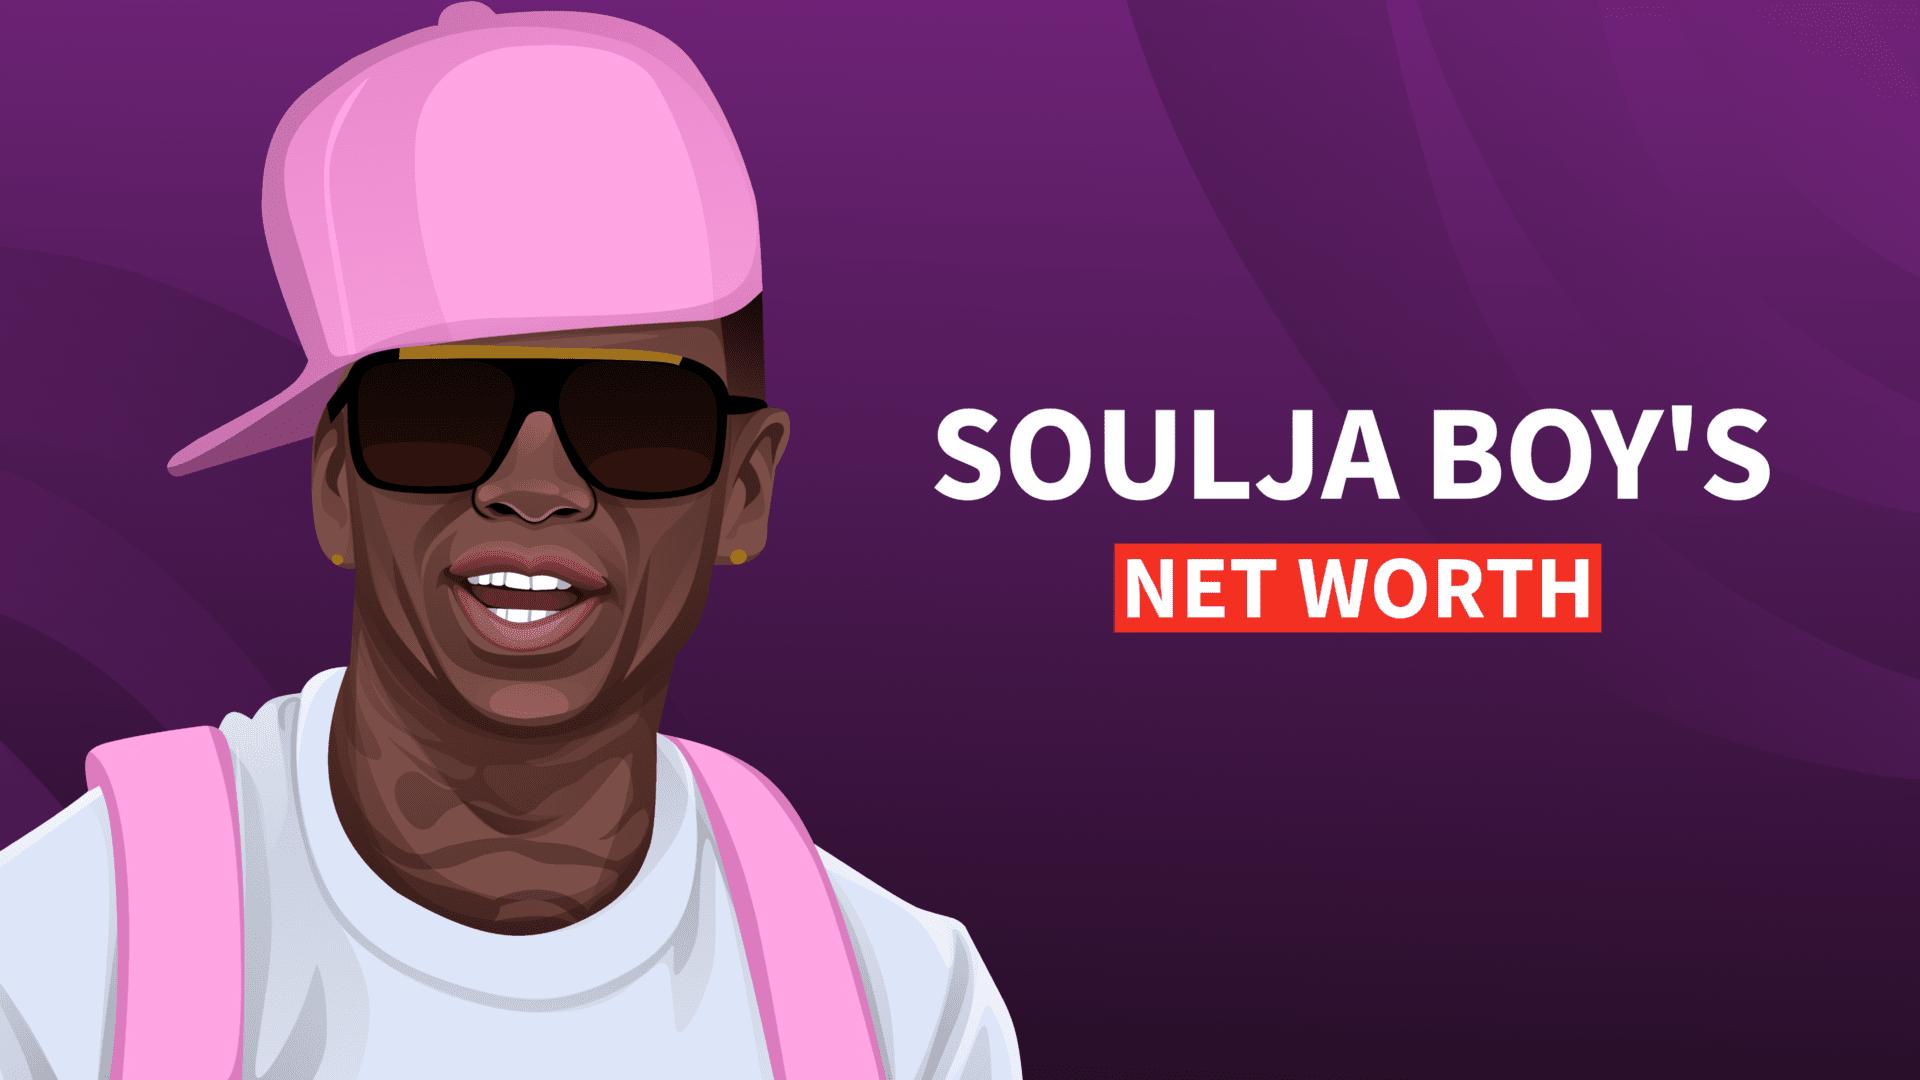 Soulja Boy's Net Worth and Back Story